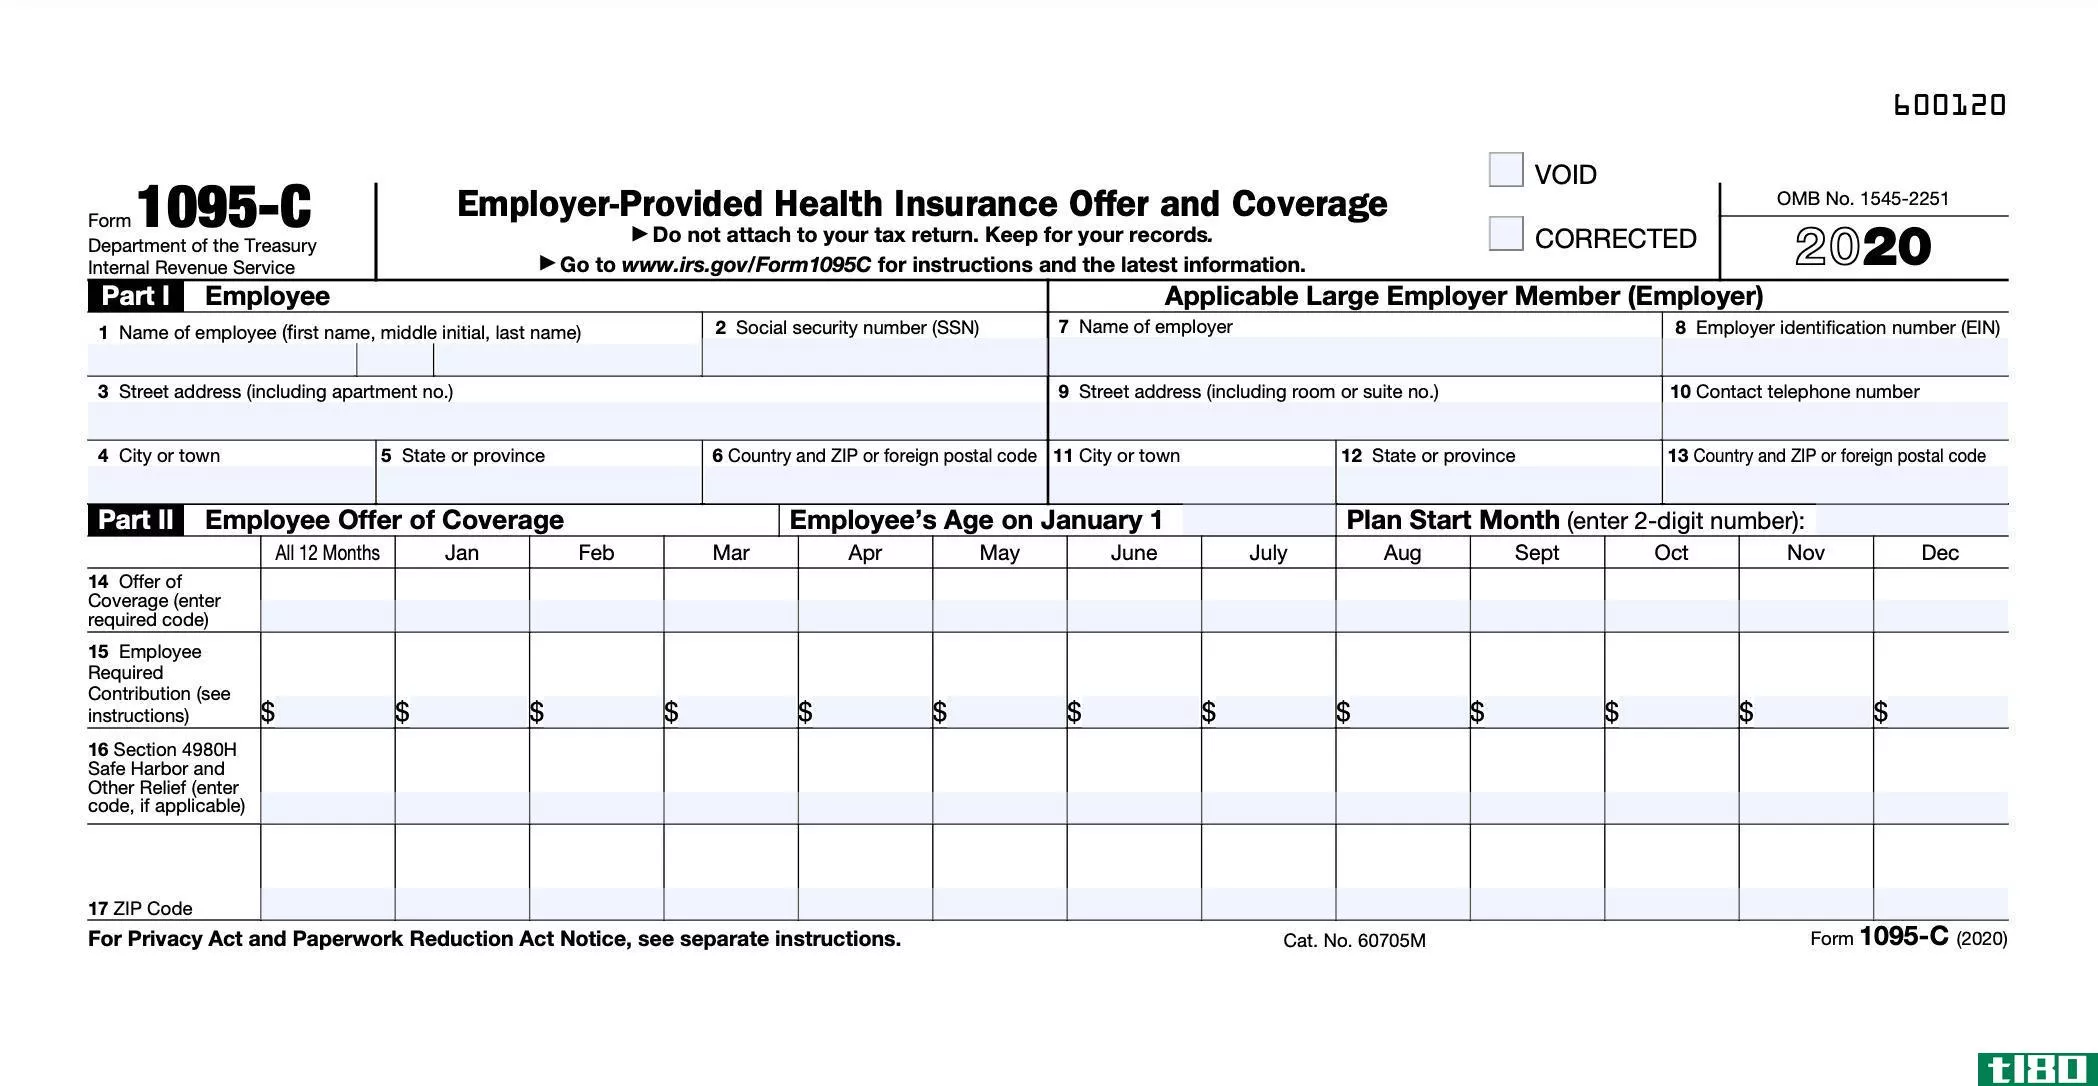 表格1095-c：雇主提供的健康保险报价和保险范围定义